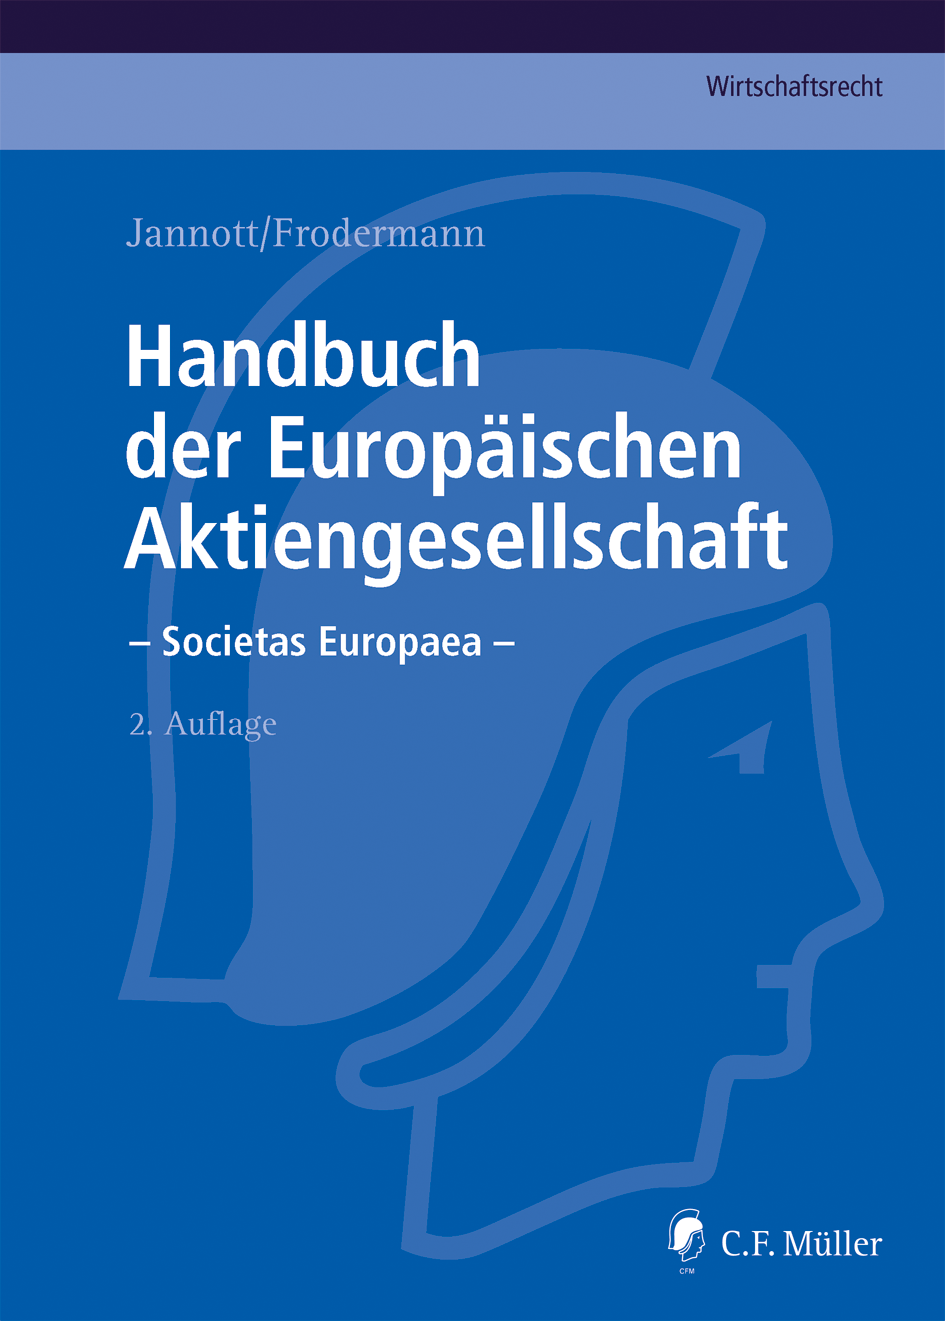 Abbildung: Handbuch der Europäischen Aktiengesellschaft - Societas Europaea